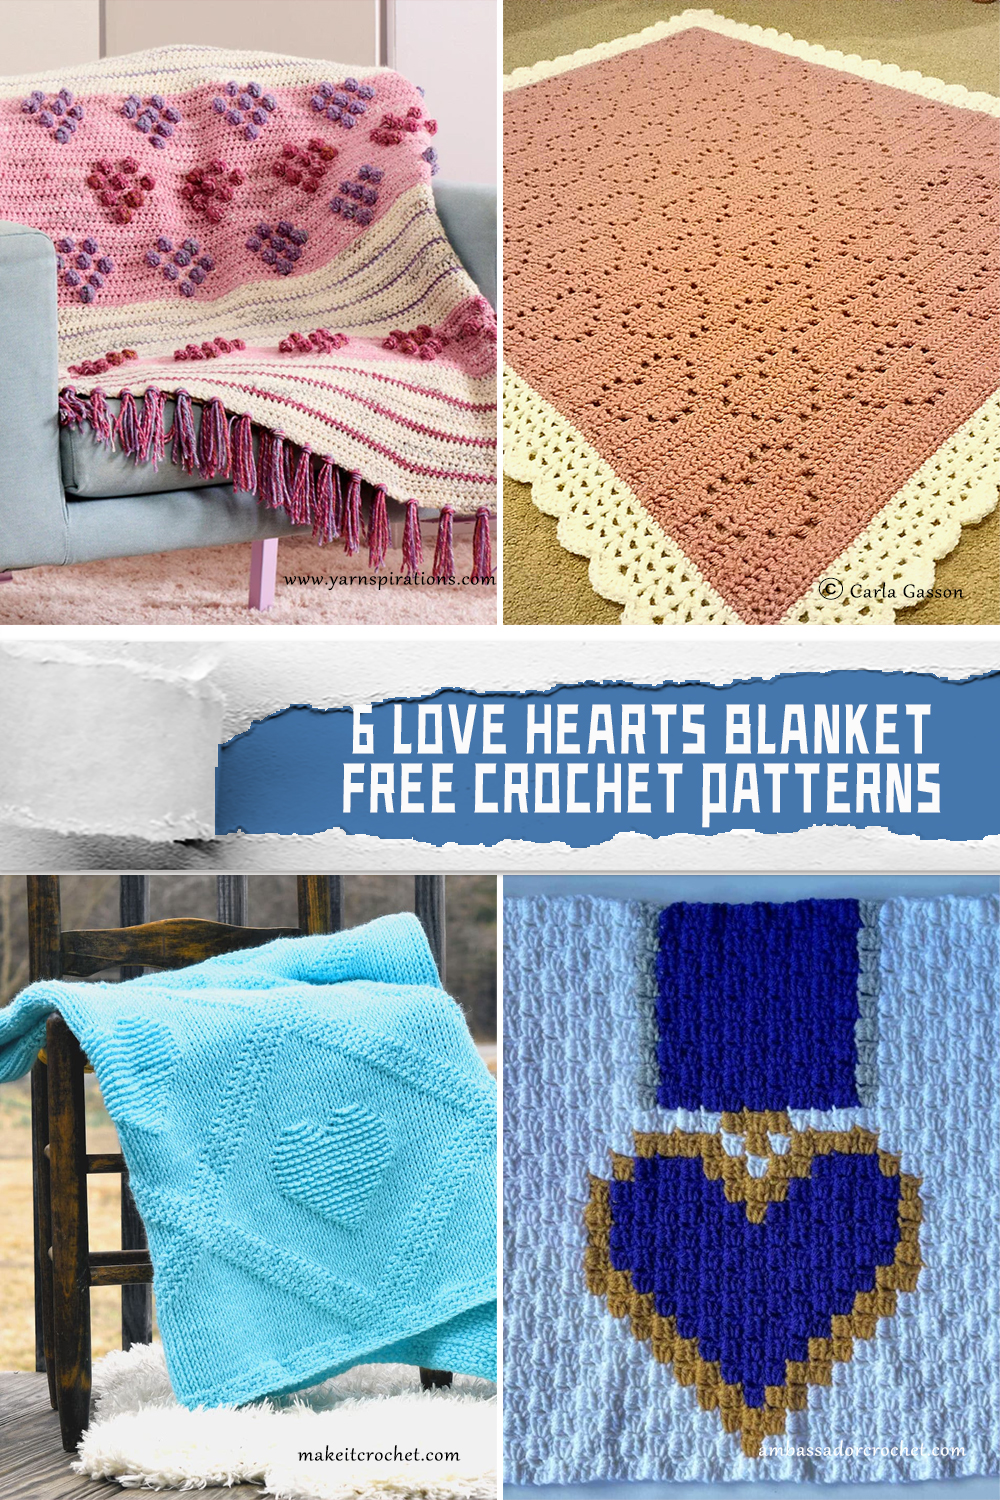 6 Love Hearts Blanket Crochet Patterns - FREE